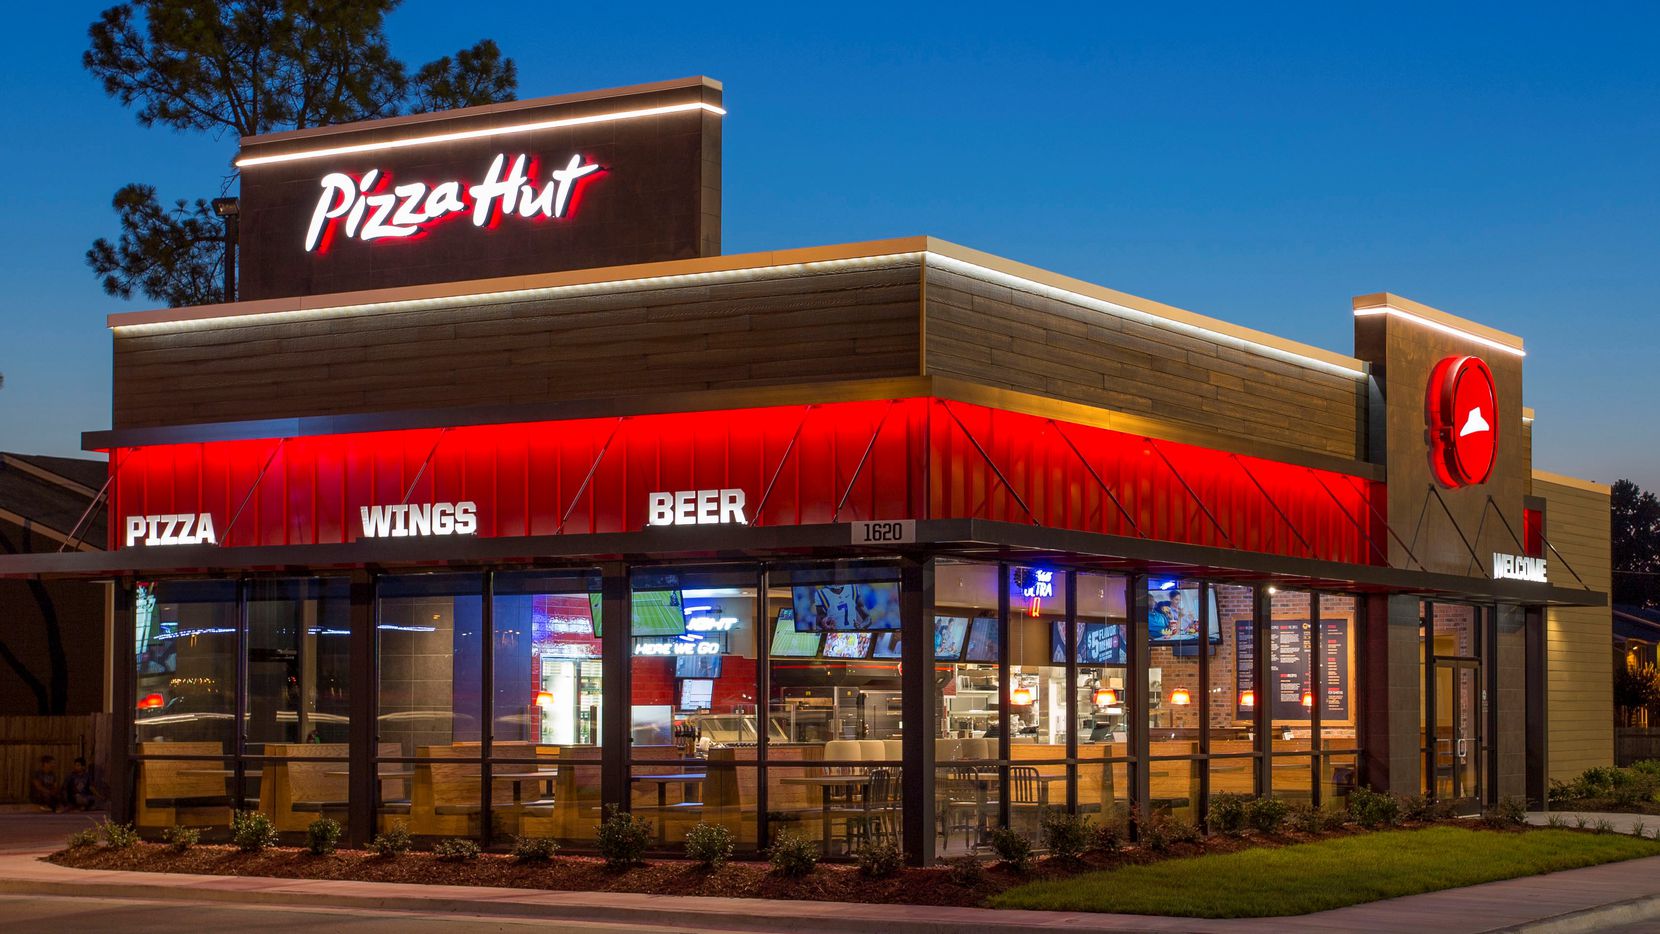 Una operadora de franquicias de Pizza Hut anunció el cierre de 300 restaurantes.